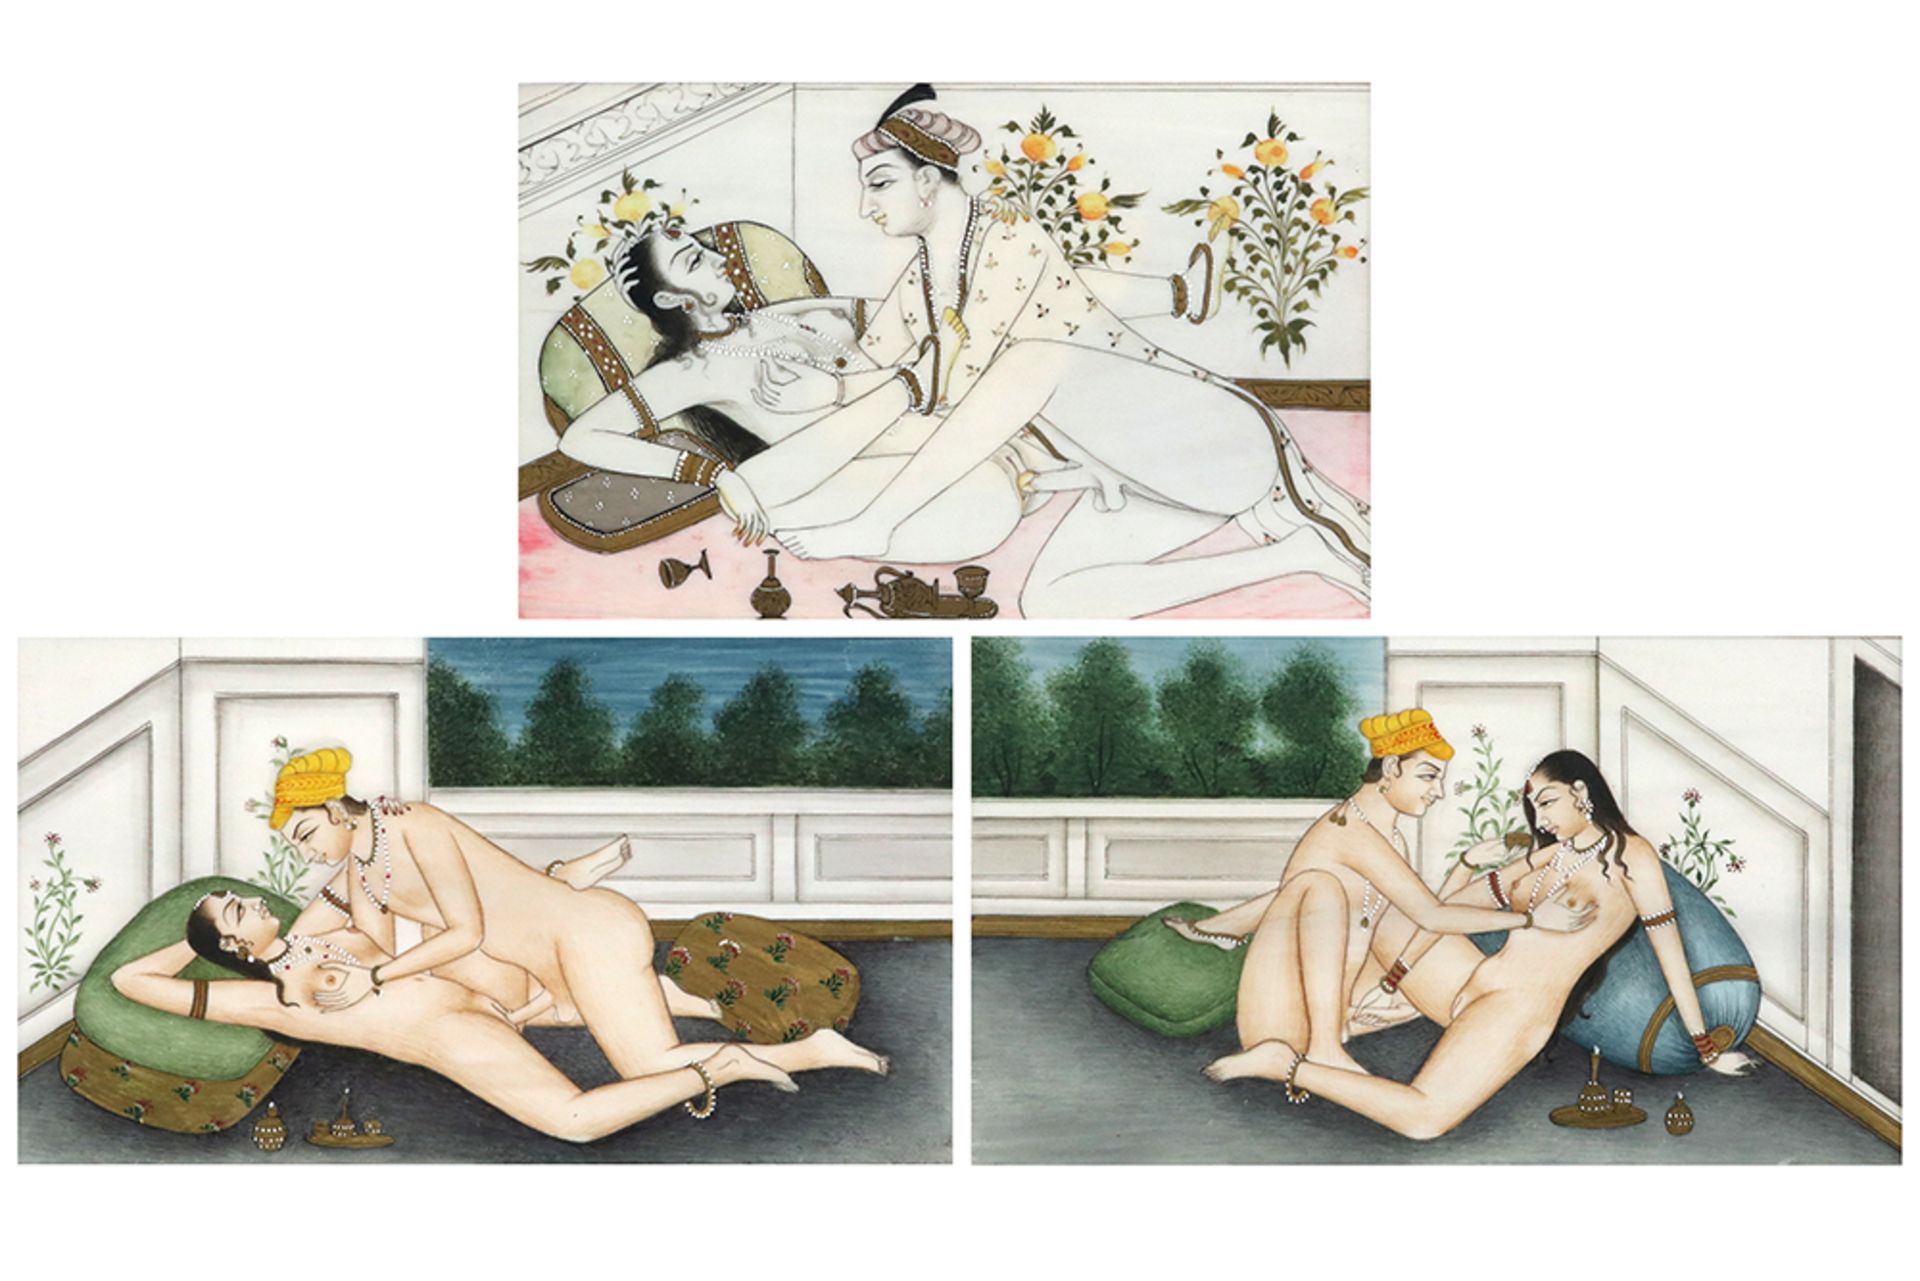 series of three Indian paintings with erotic scenes || Reeks van drie Indische schilderingen met